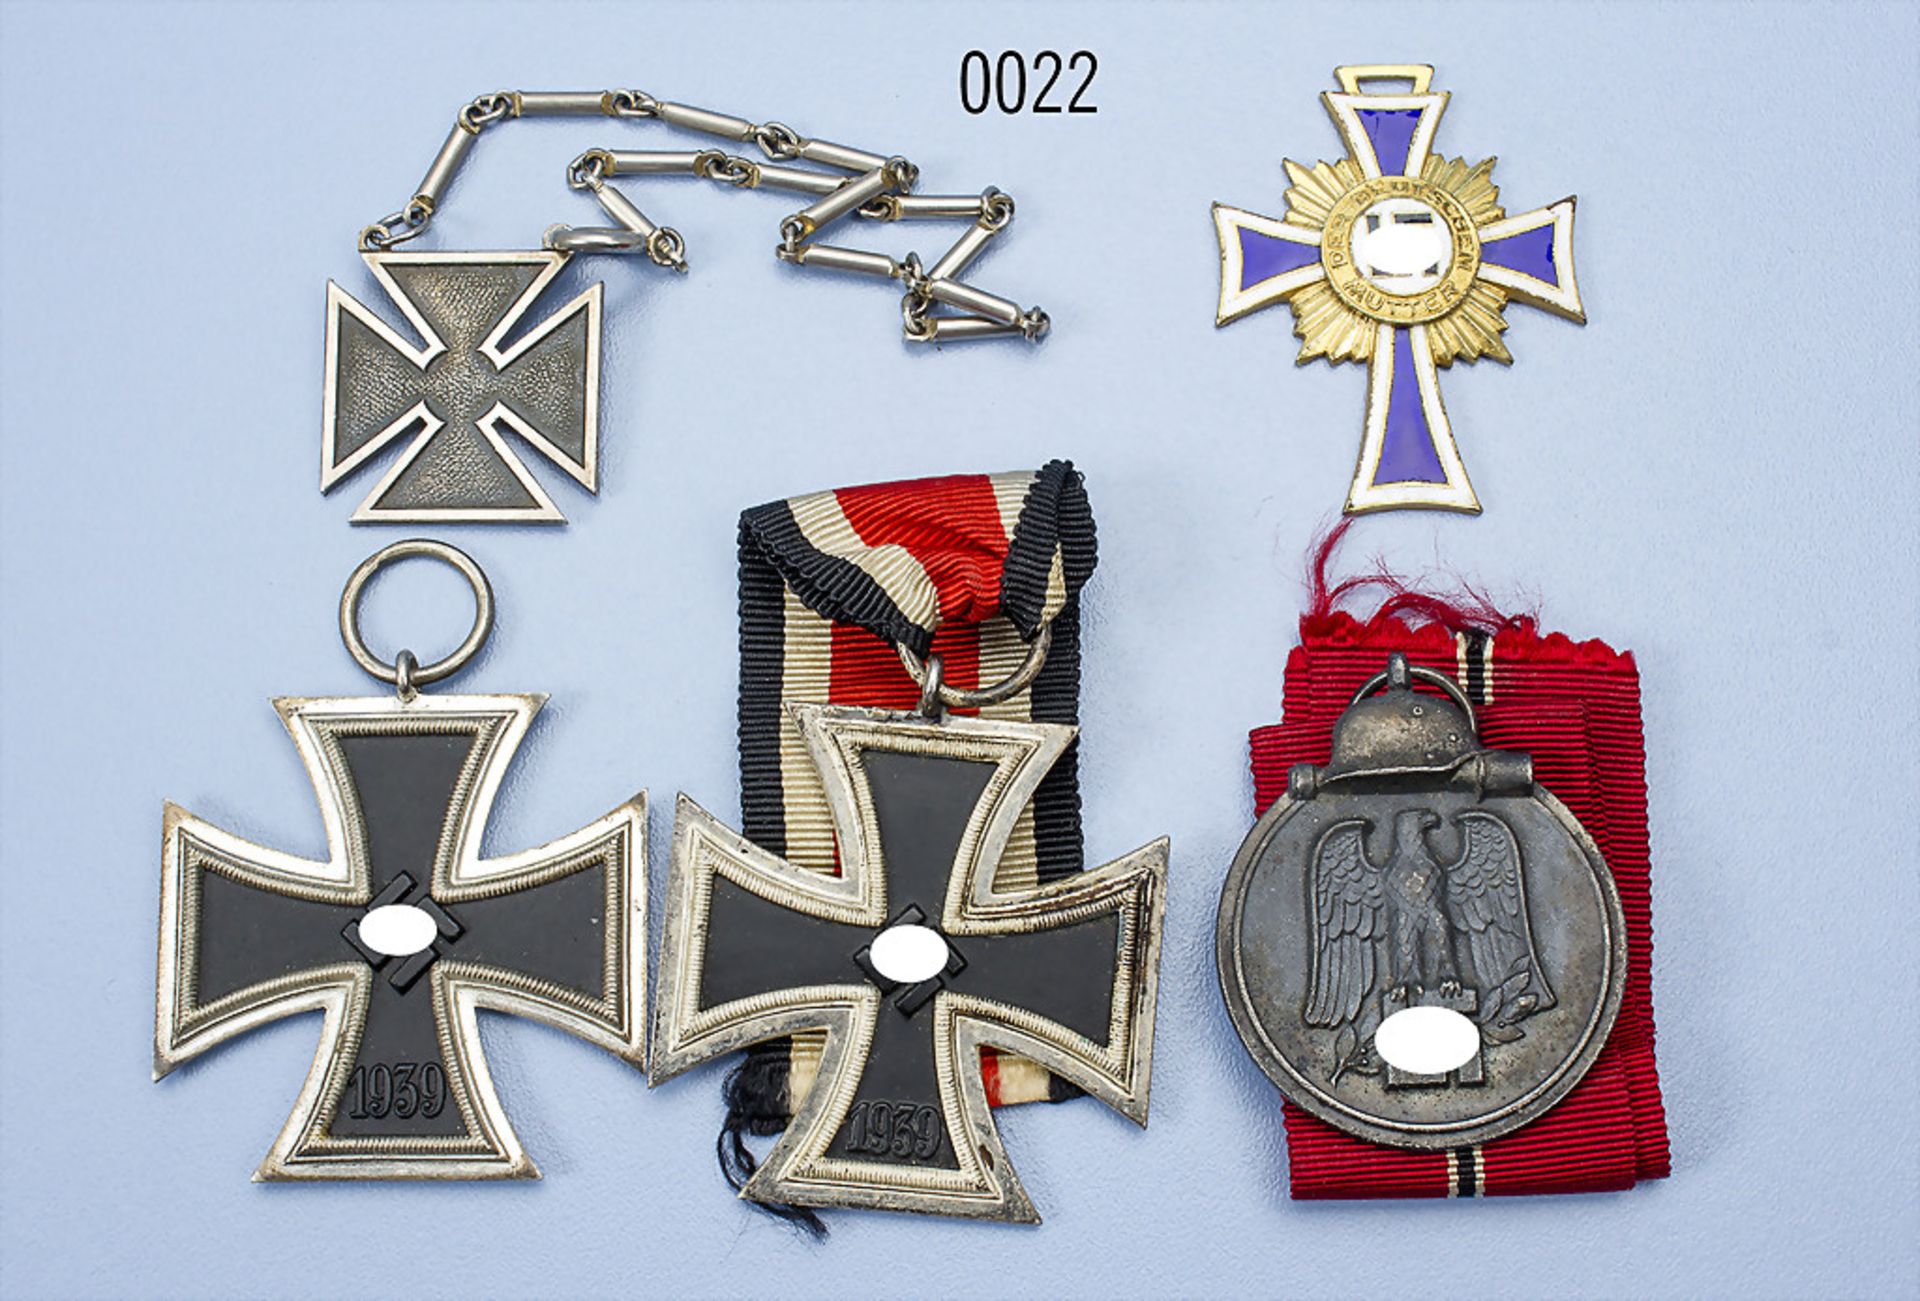 Konv. 2 EK 2 1939, Ostmedaille, Mutterkreuz in Gold mit Emailchip sowie beschädigte U.S.